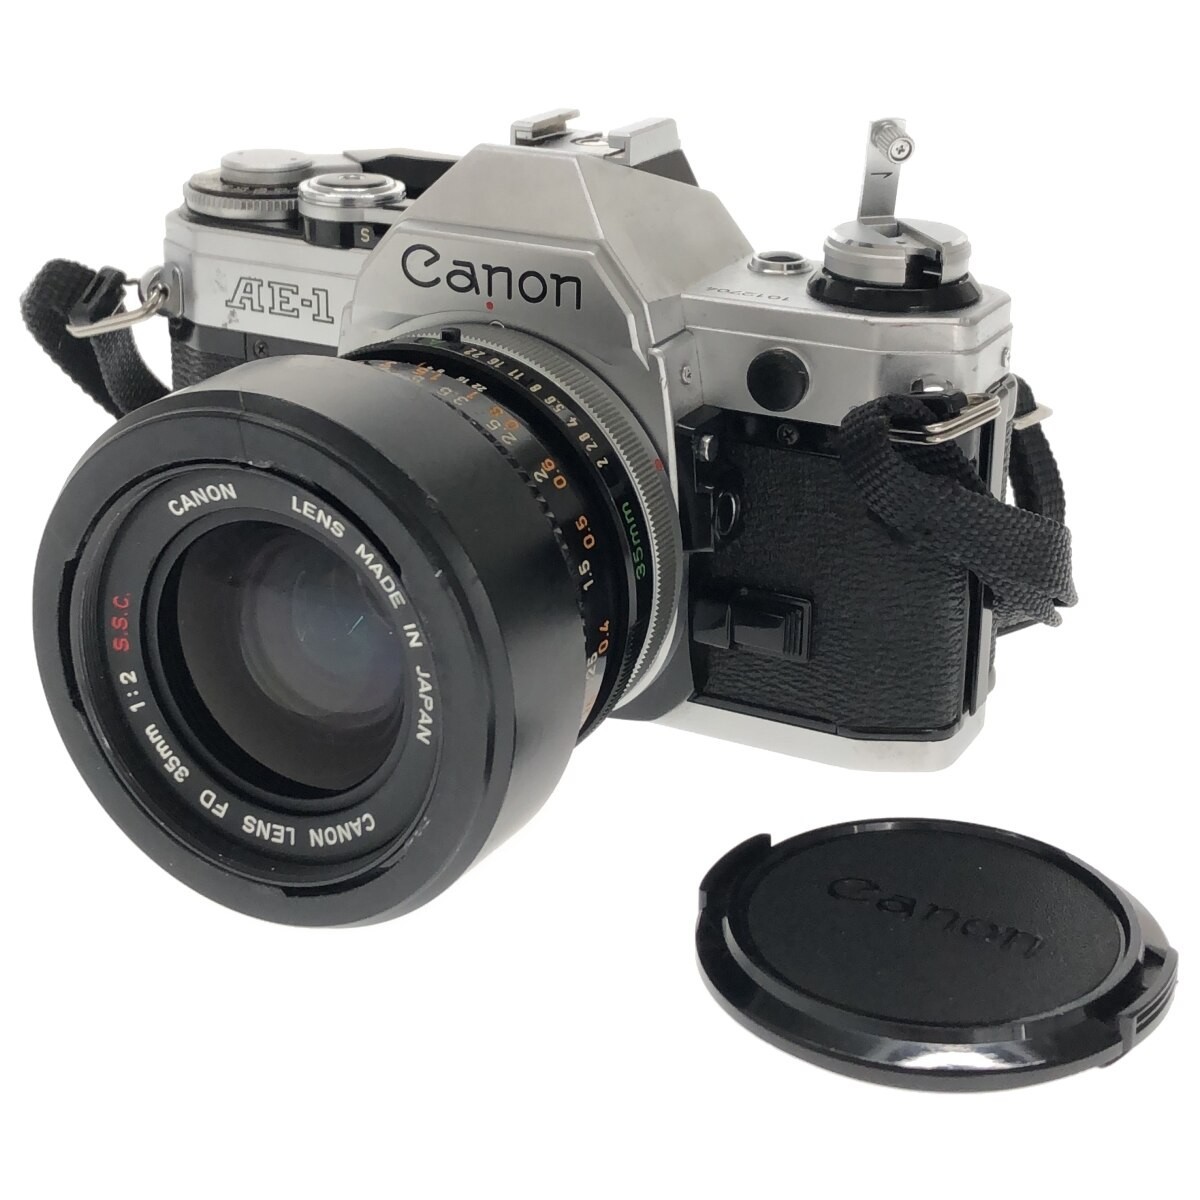 新しいスタイル 【完動品】Canon AE-1 C3642 鳴きなし 人気機種 広角単焦点レンズ 大口径 フィルムカメラ MF一眼レフ キャノン SSC S.S.C. F2 35mm FD LENS キヤノン